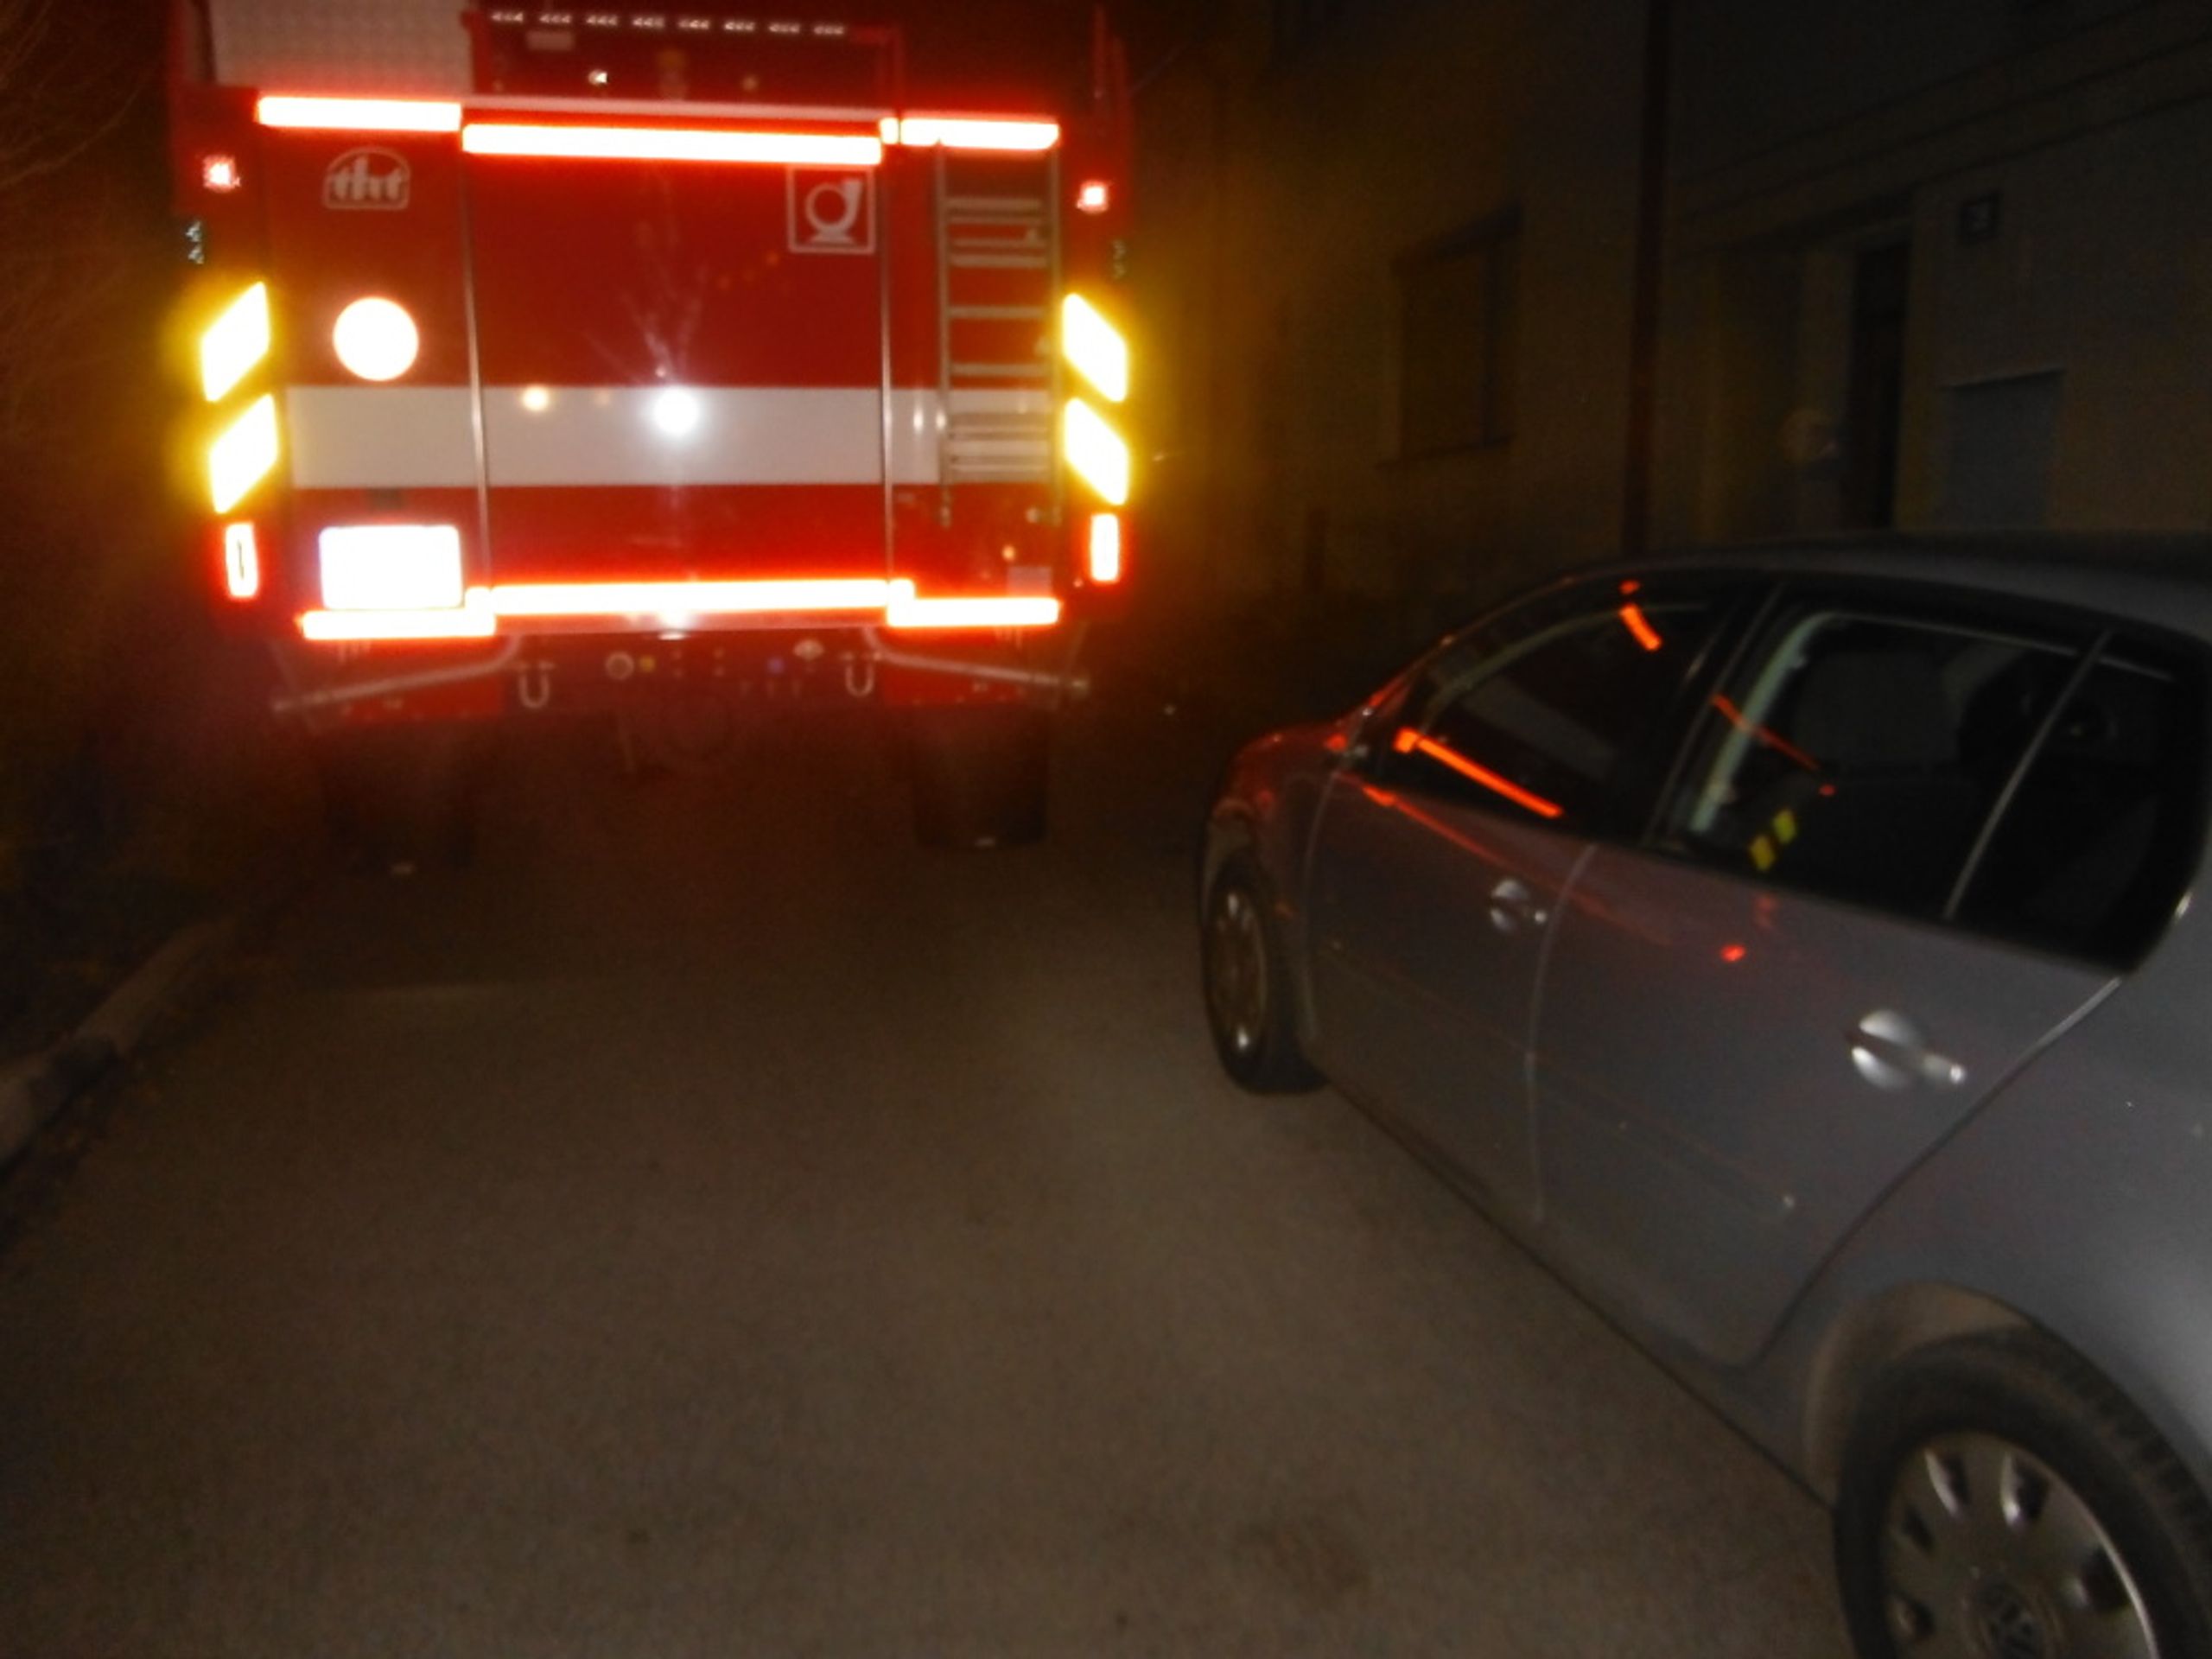 Náročná cesta k požáru - Fotogalerie: Hasiči ničili auta cestou k požáru, nemohli projet (3/5)